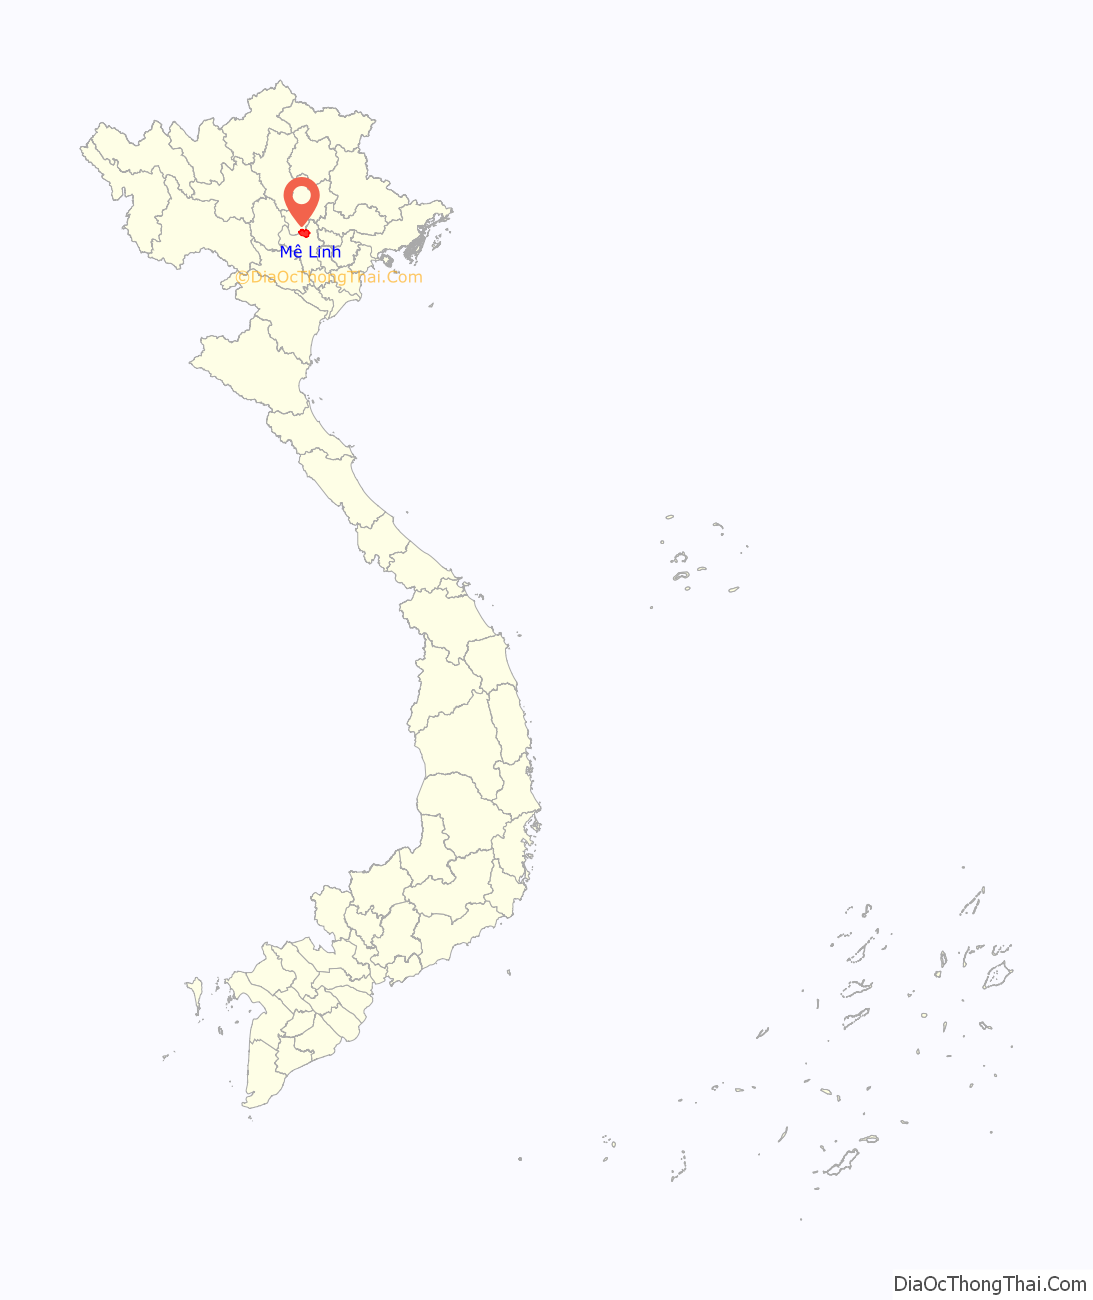 Huyện Mê Linh ở đâu? Vị trí của huyện Mê Linh